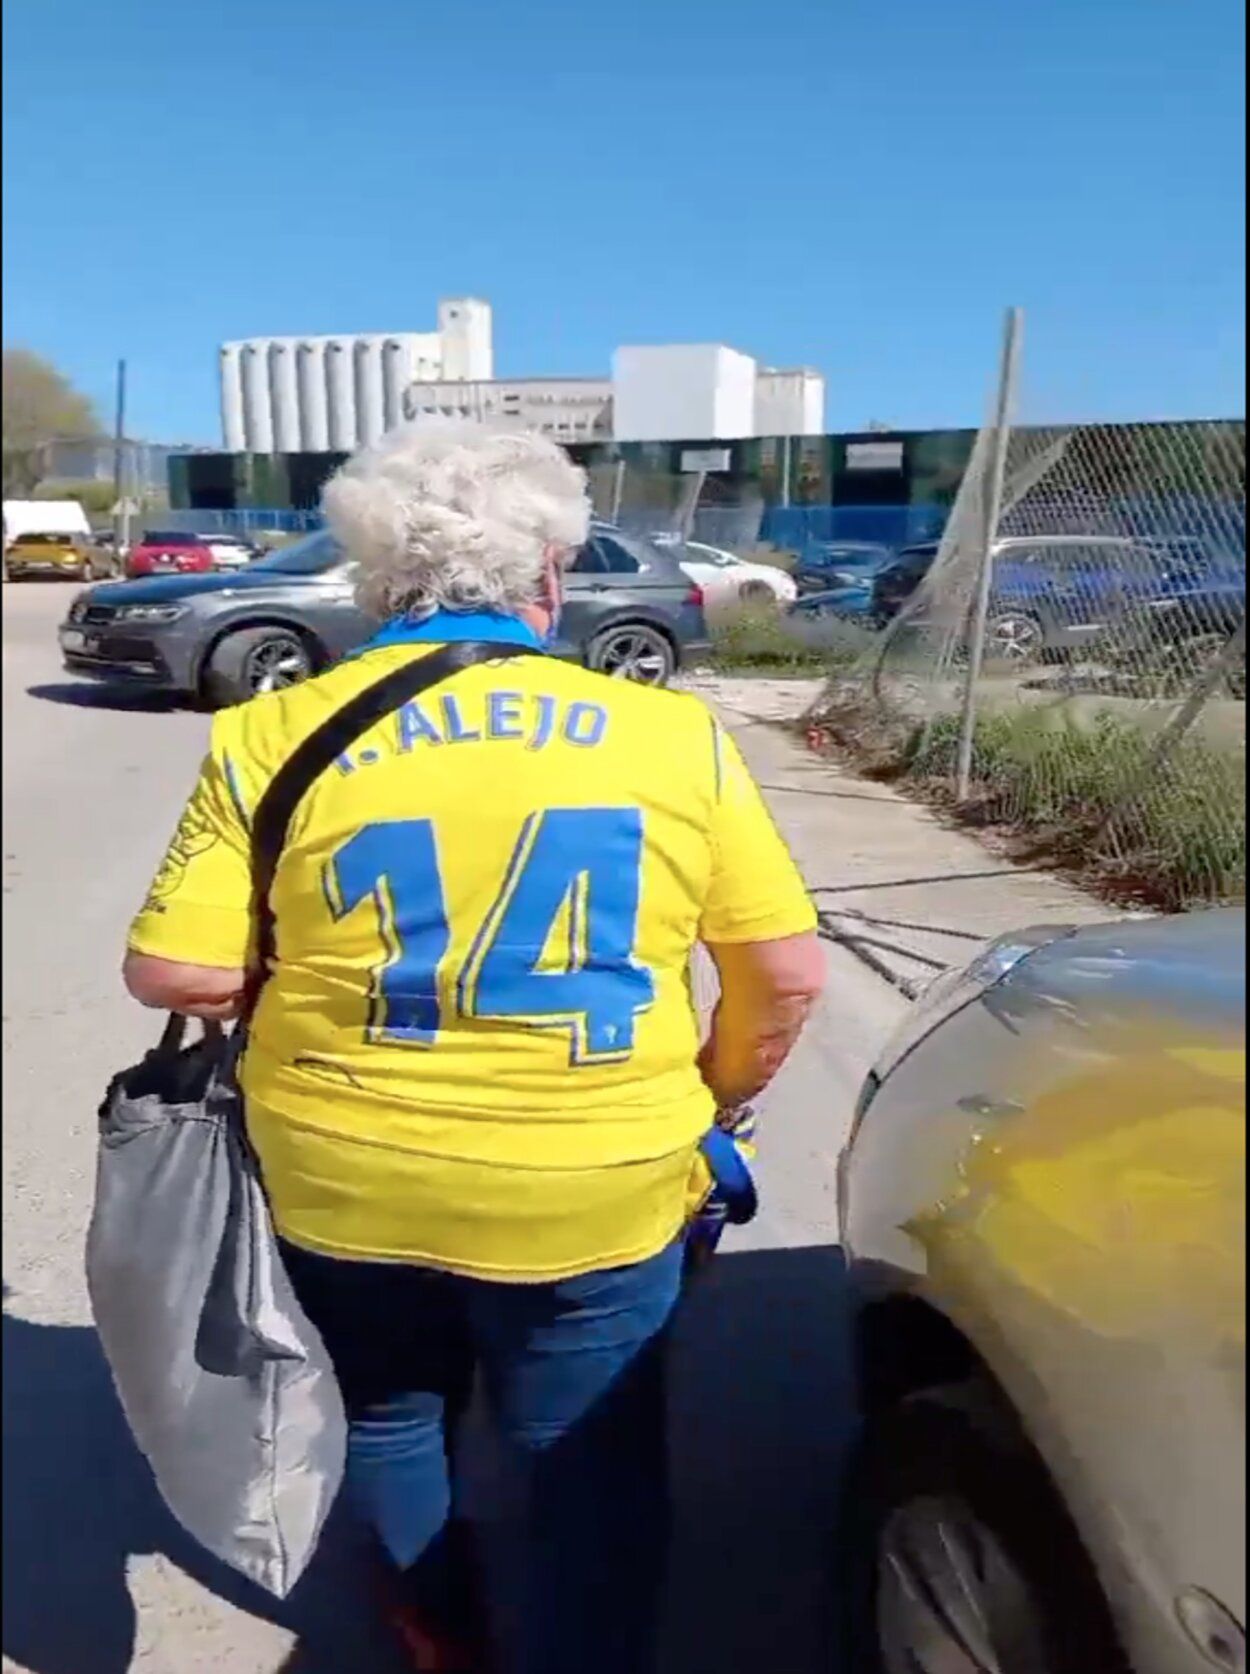 La mayor fan del Cádiz vuelve al estadio con su sueño cumplido: "Gracias por lo que habéis hecho"